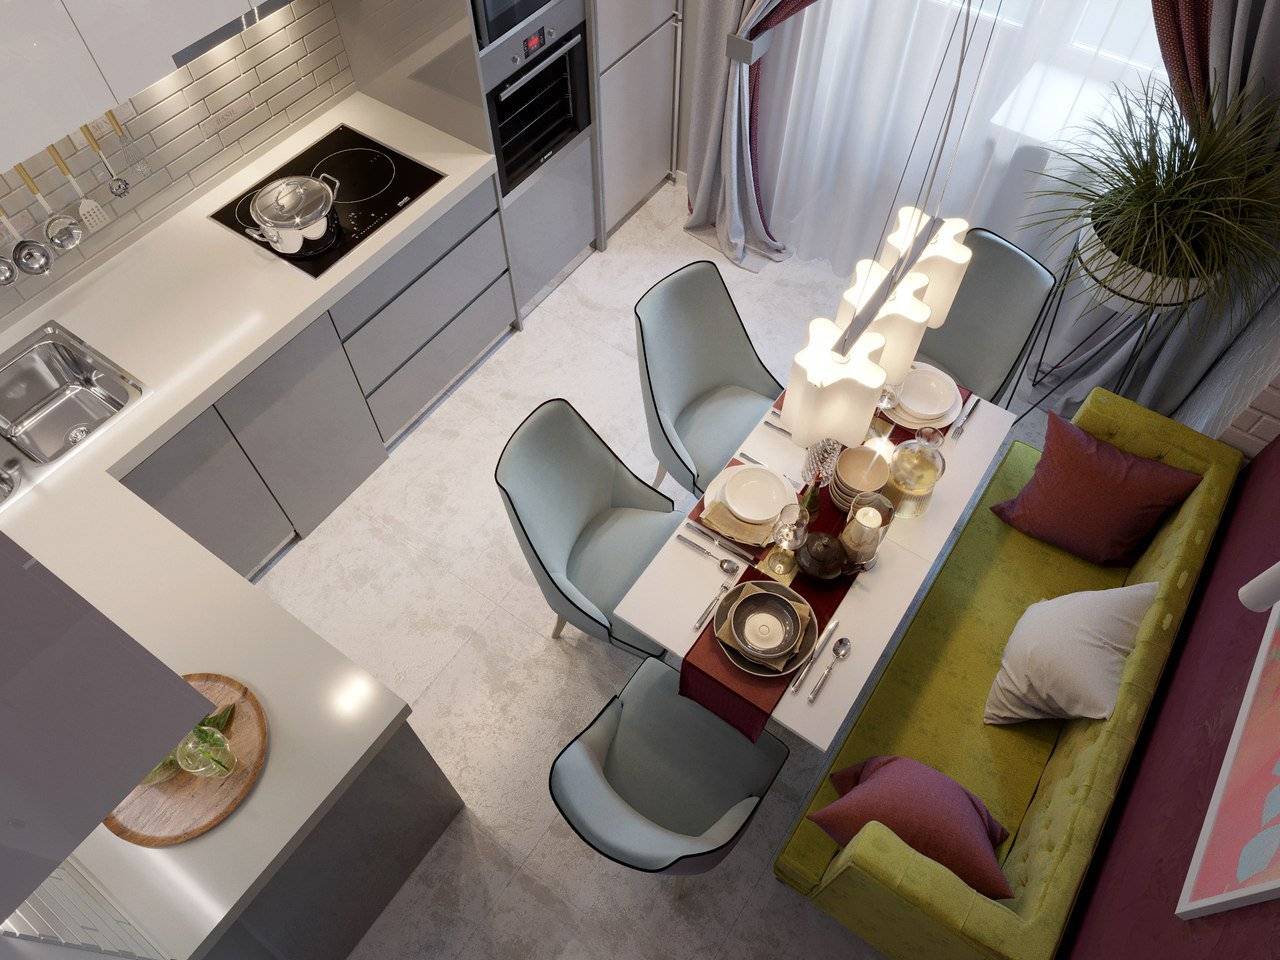 Правильный дизайн кухни-гостиной 16 кв. м. с зонированием